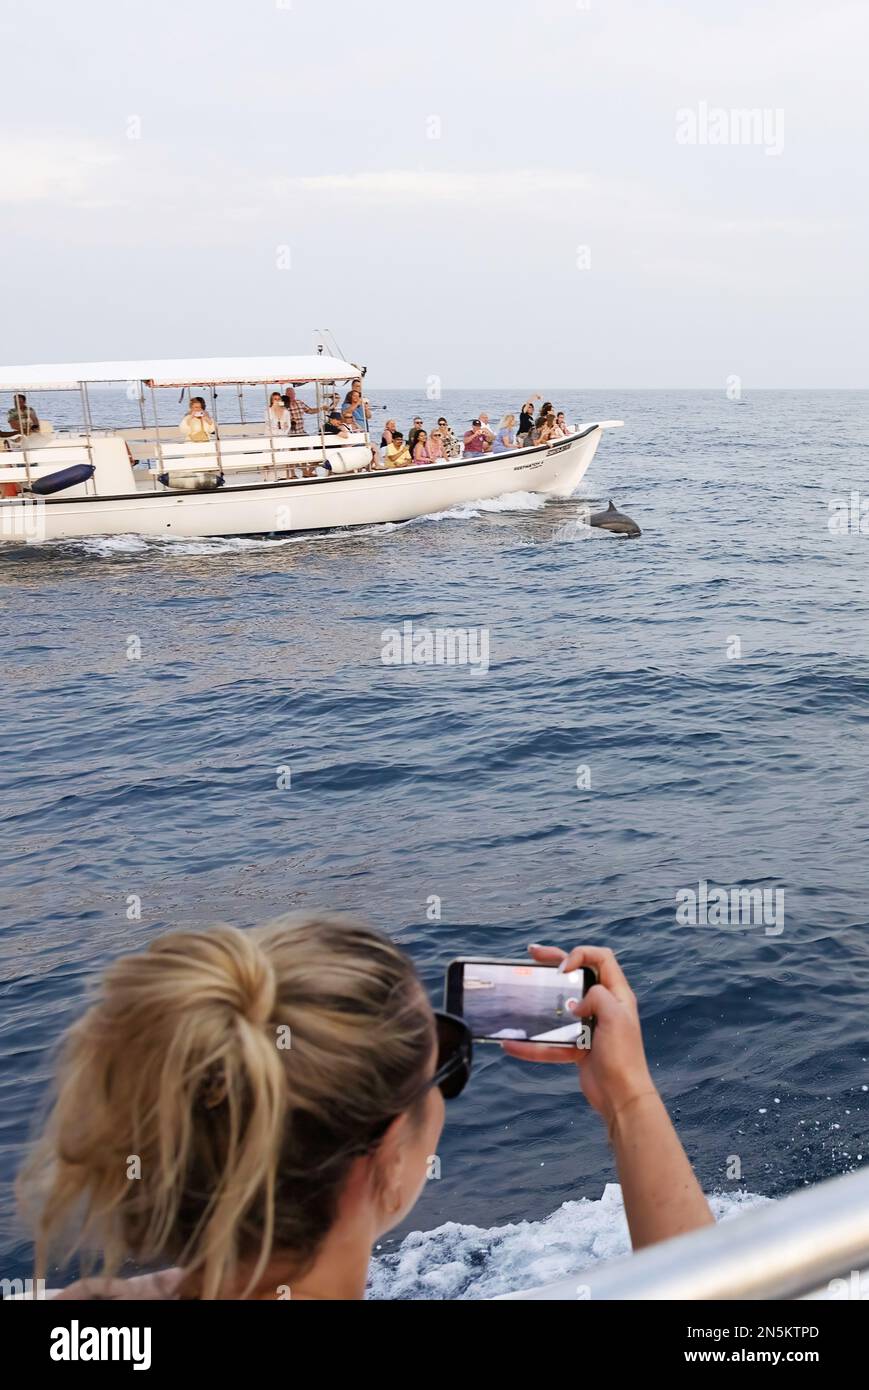 Tourismus auf den Malediven; Tourist fotografiert Delfine, während sie von einem Boot aus Delfine beobachten; Indischer Ozean, Malediven Asien Stockfoto